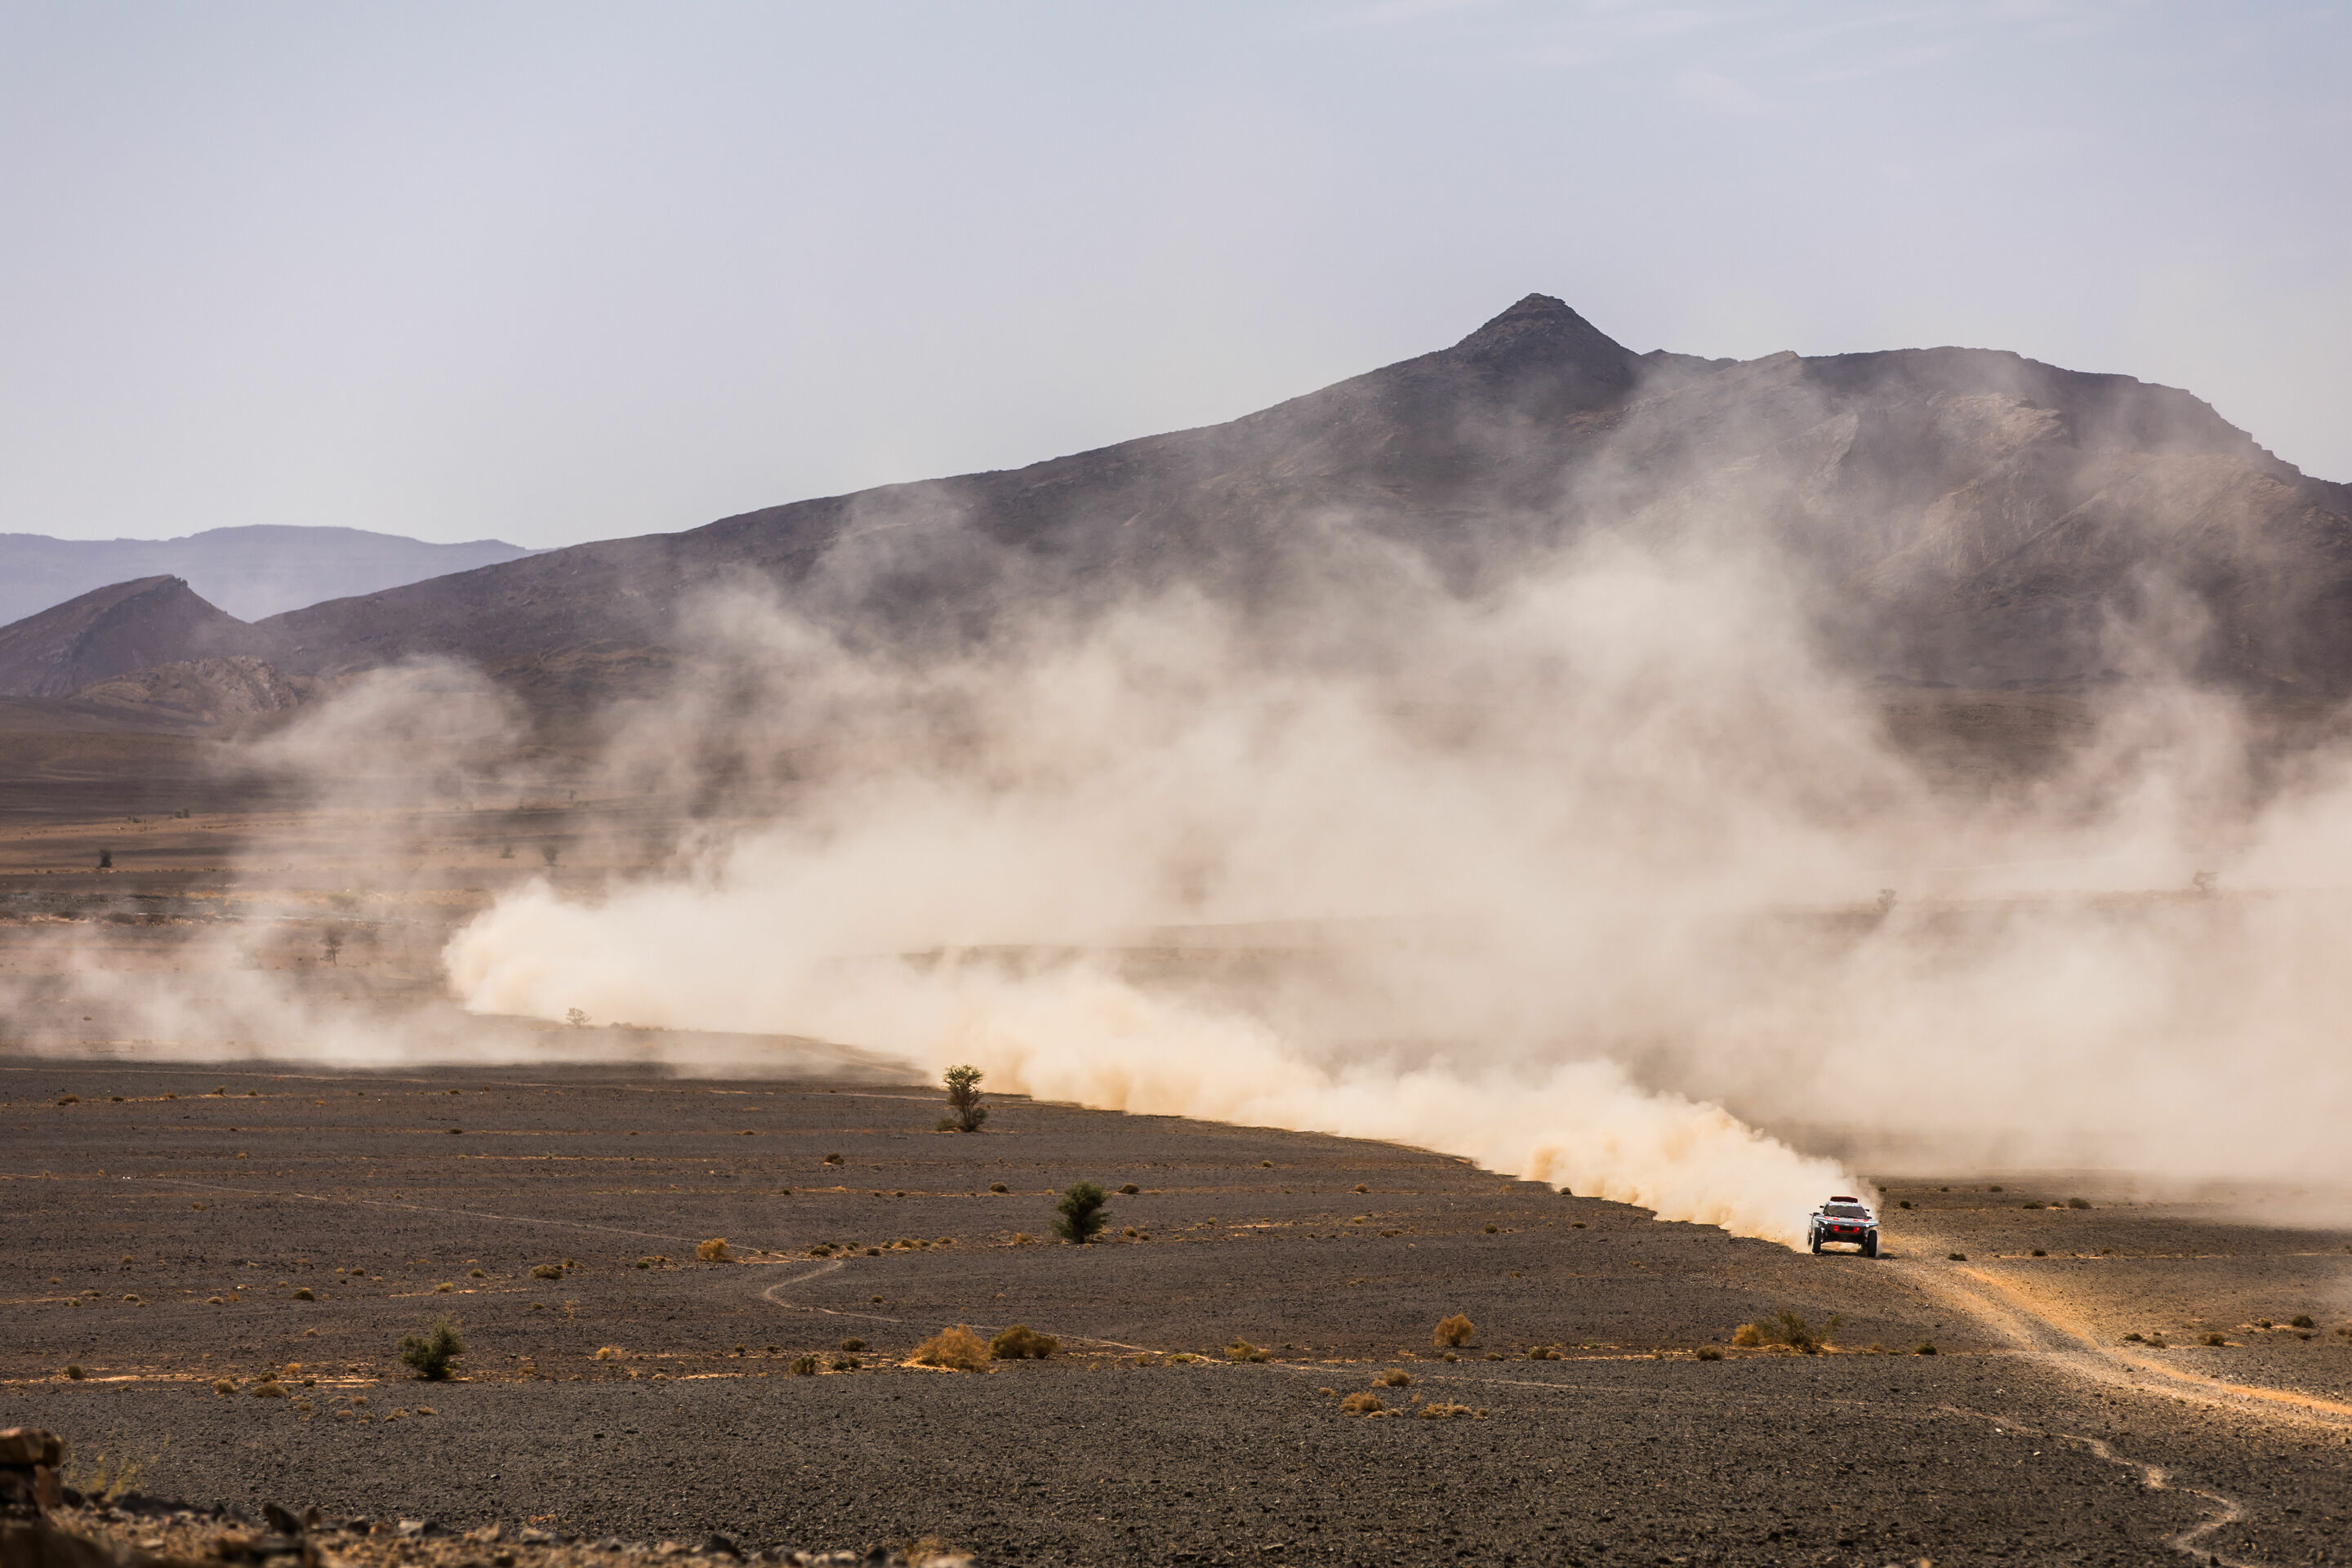 Rallye du Maroc 2023